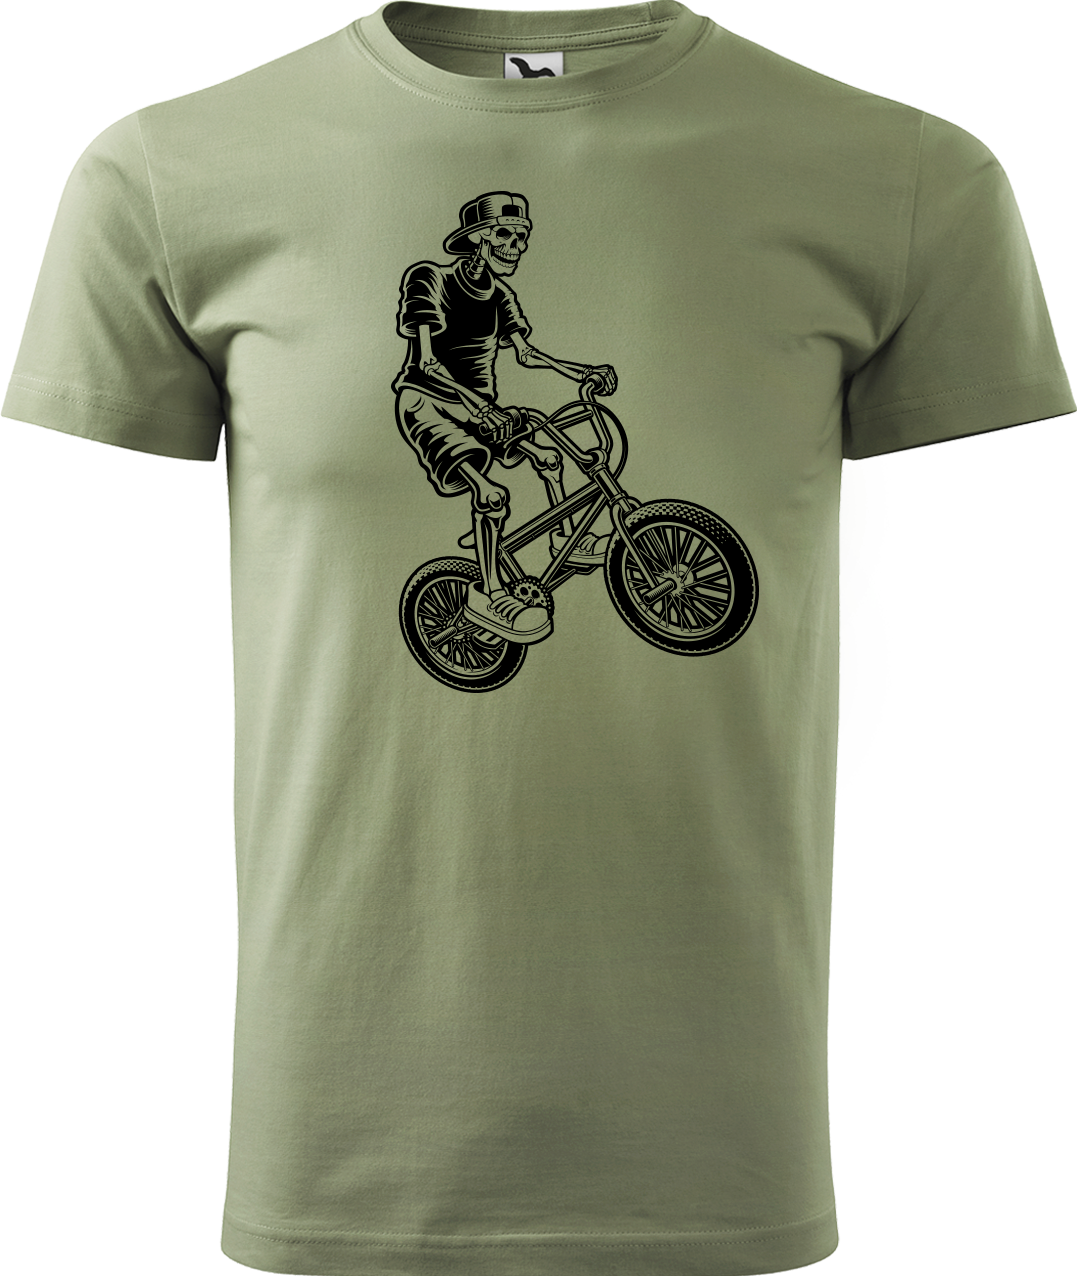 Pánské tričko s kolem - Trial Bike Velikost: L, Barva: Světlá khaki (28)